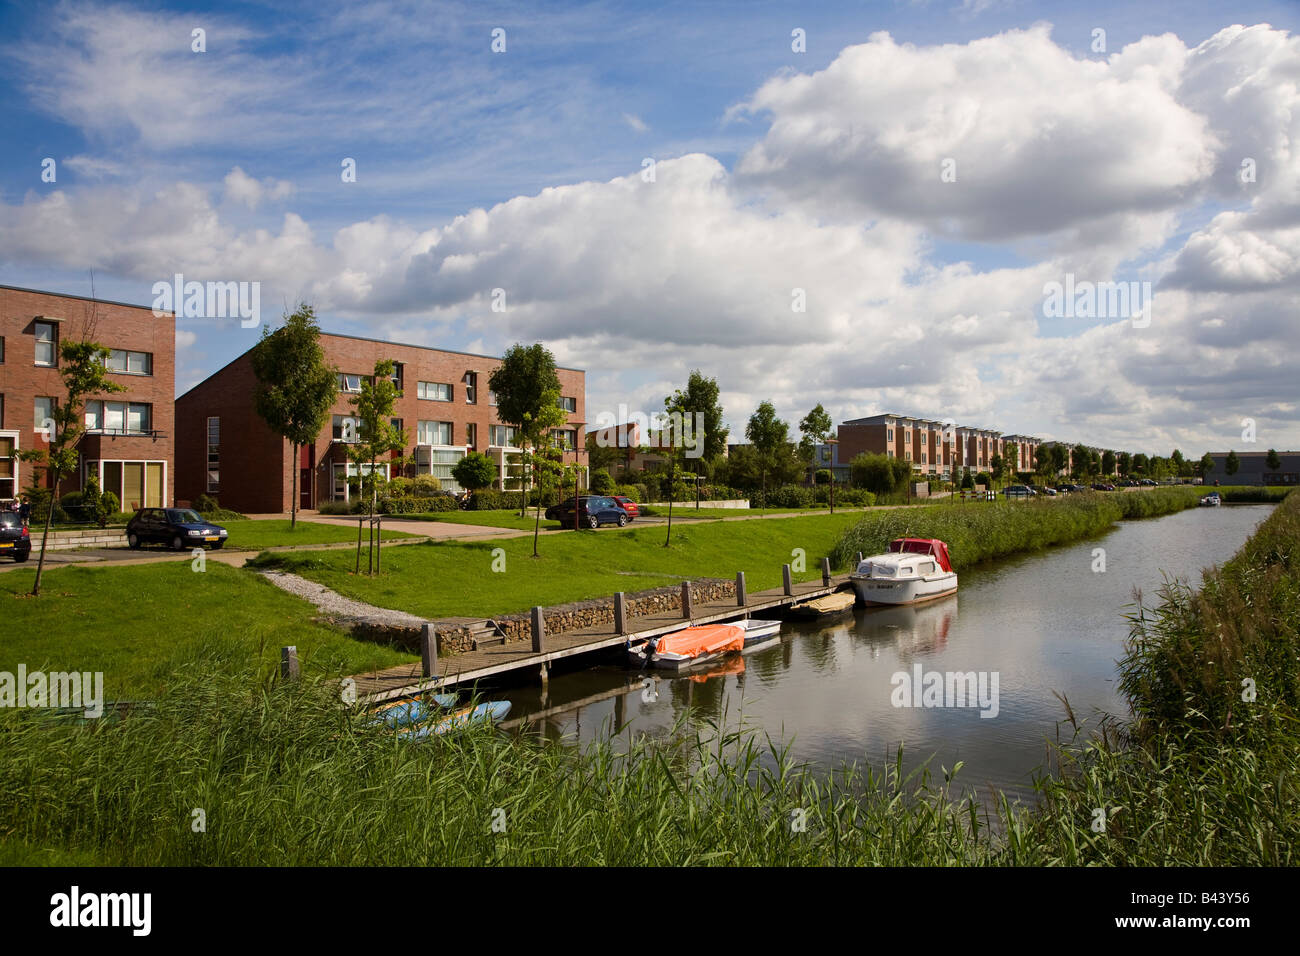 Maisons modernes sur la nouvelle estate avec des bateaux sur canal Lelystad Pays-Bas Banque D'Images